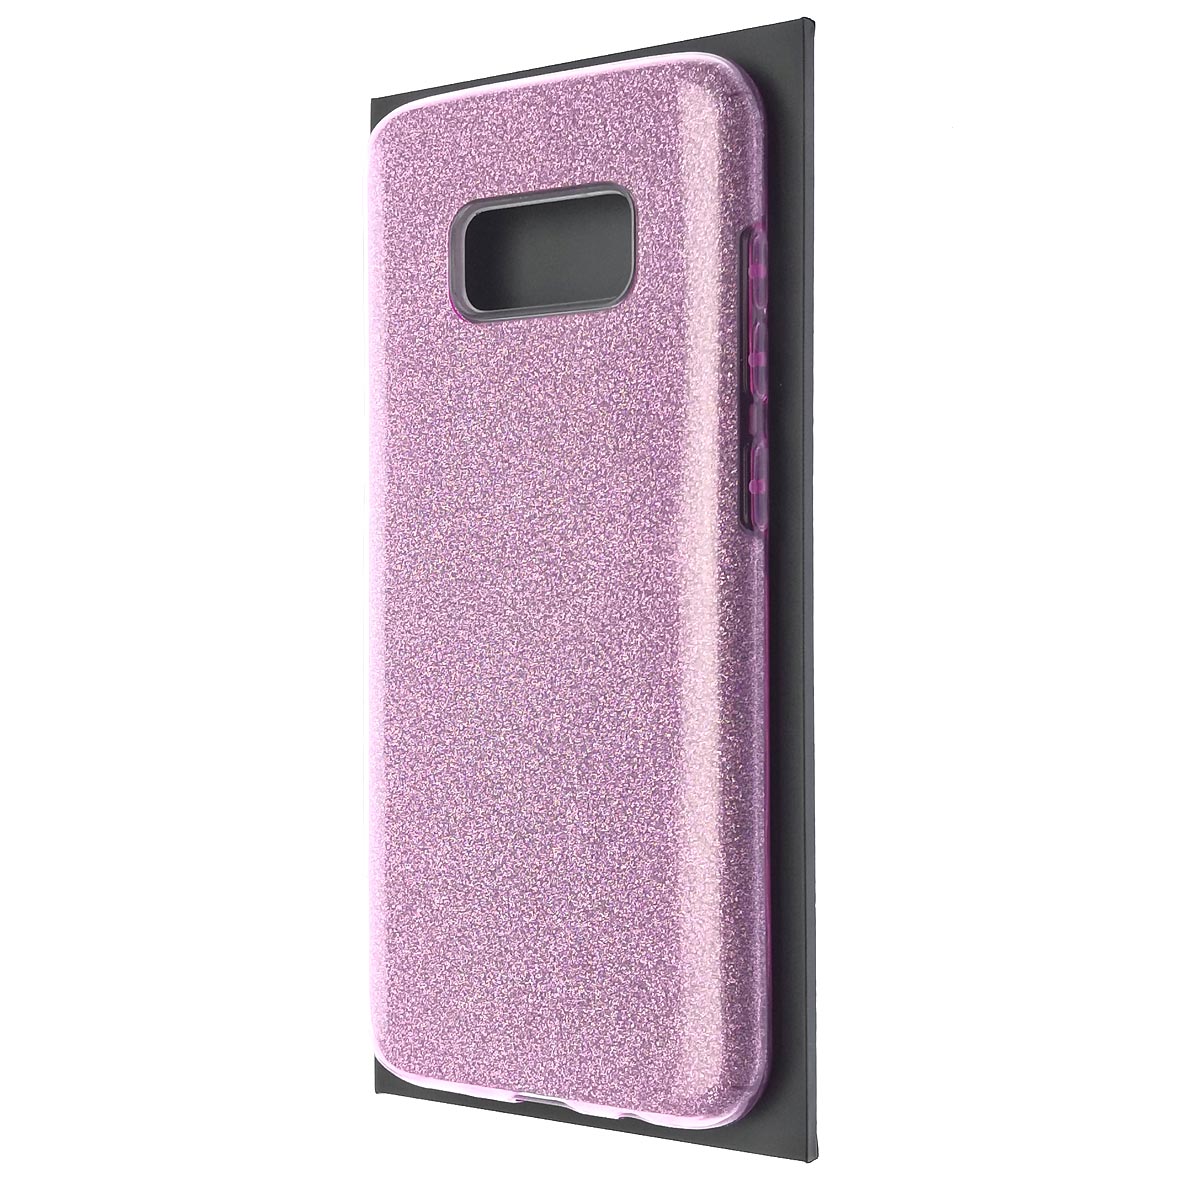 Чехол накладка для SAMSUNG Galaxy S8 (SM-G950), силикон, блестки, цвет сиреневый